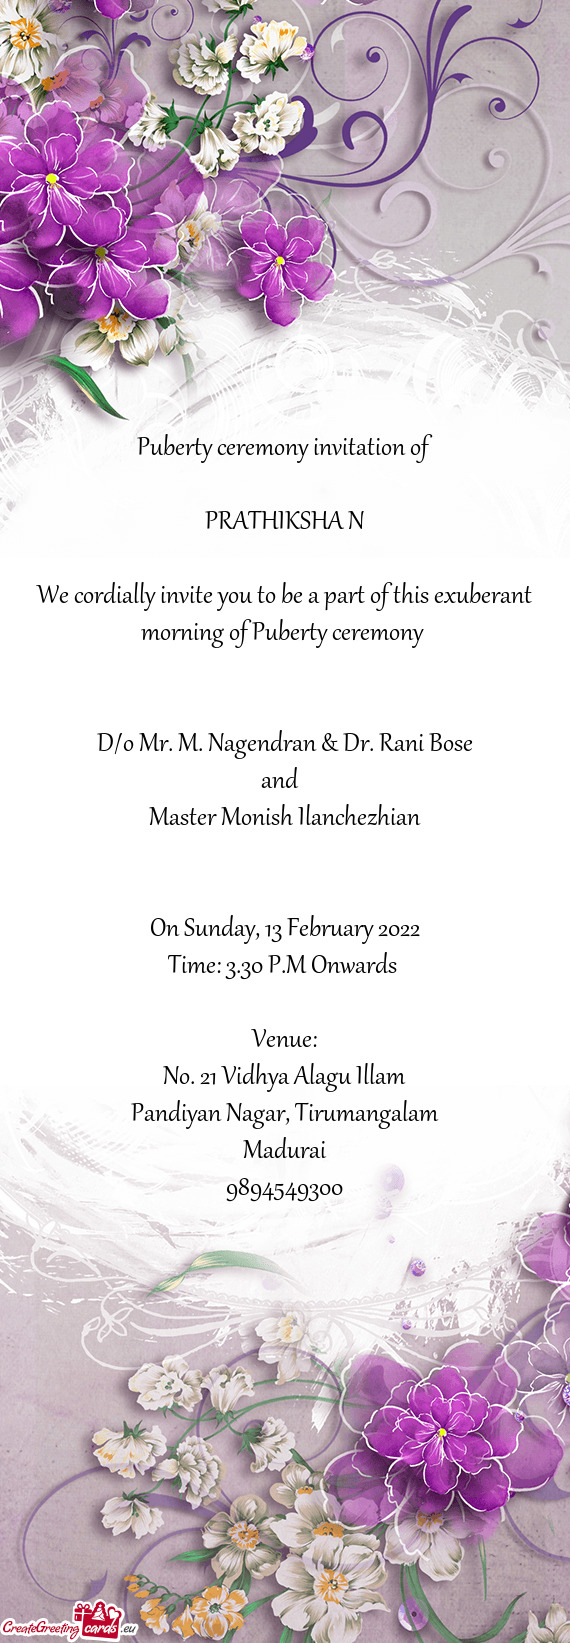 D/o Mr. M. Nagendran & Dr. Rani Bose